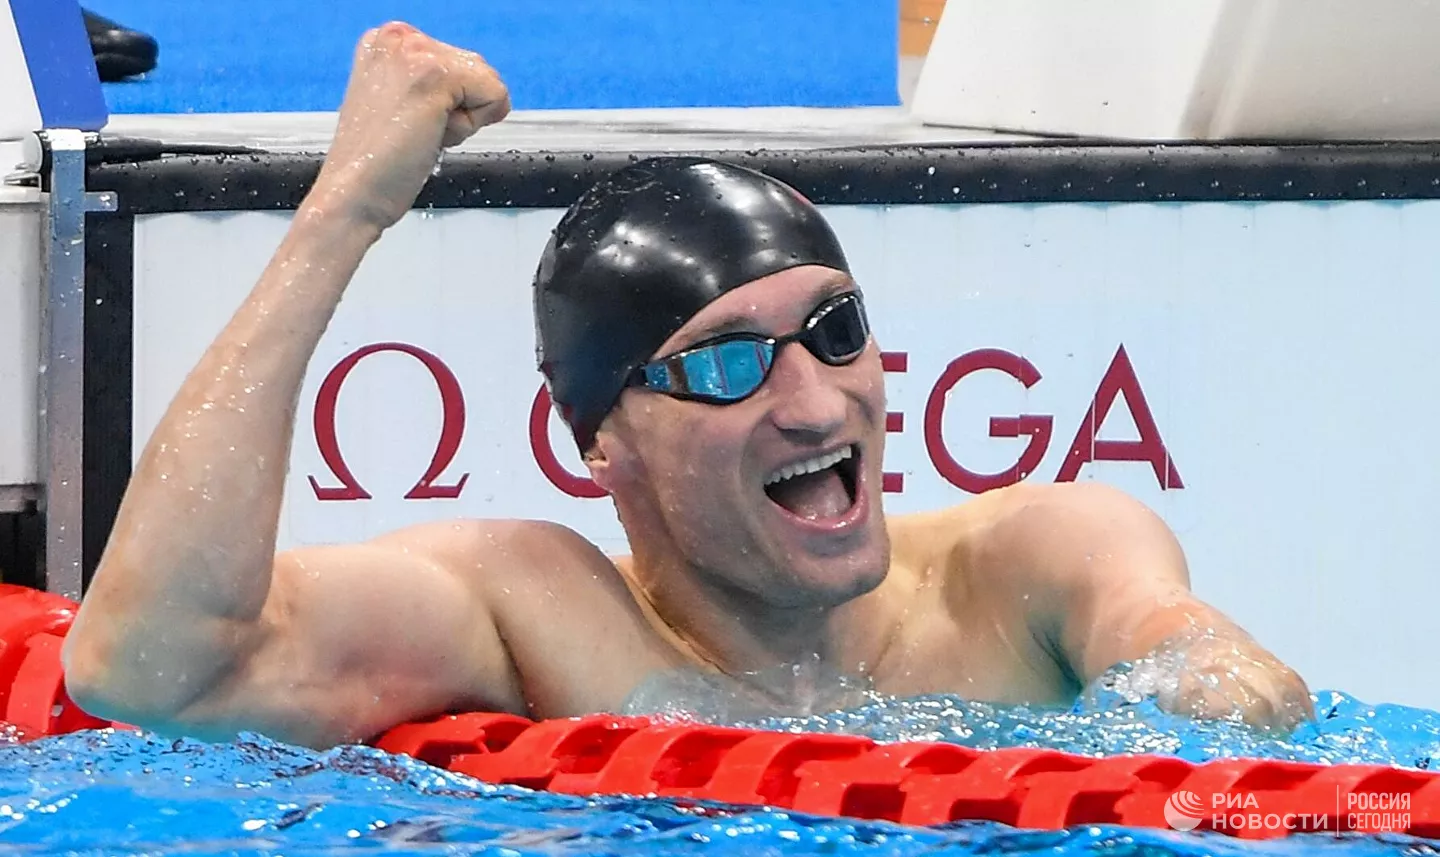 Чемпион Паралимпиады пловец Калина в интервью РИА Новости признался, что он в шоке от победы